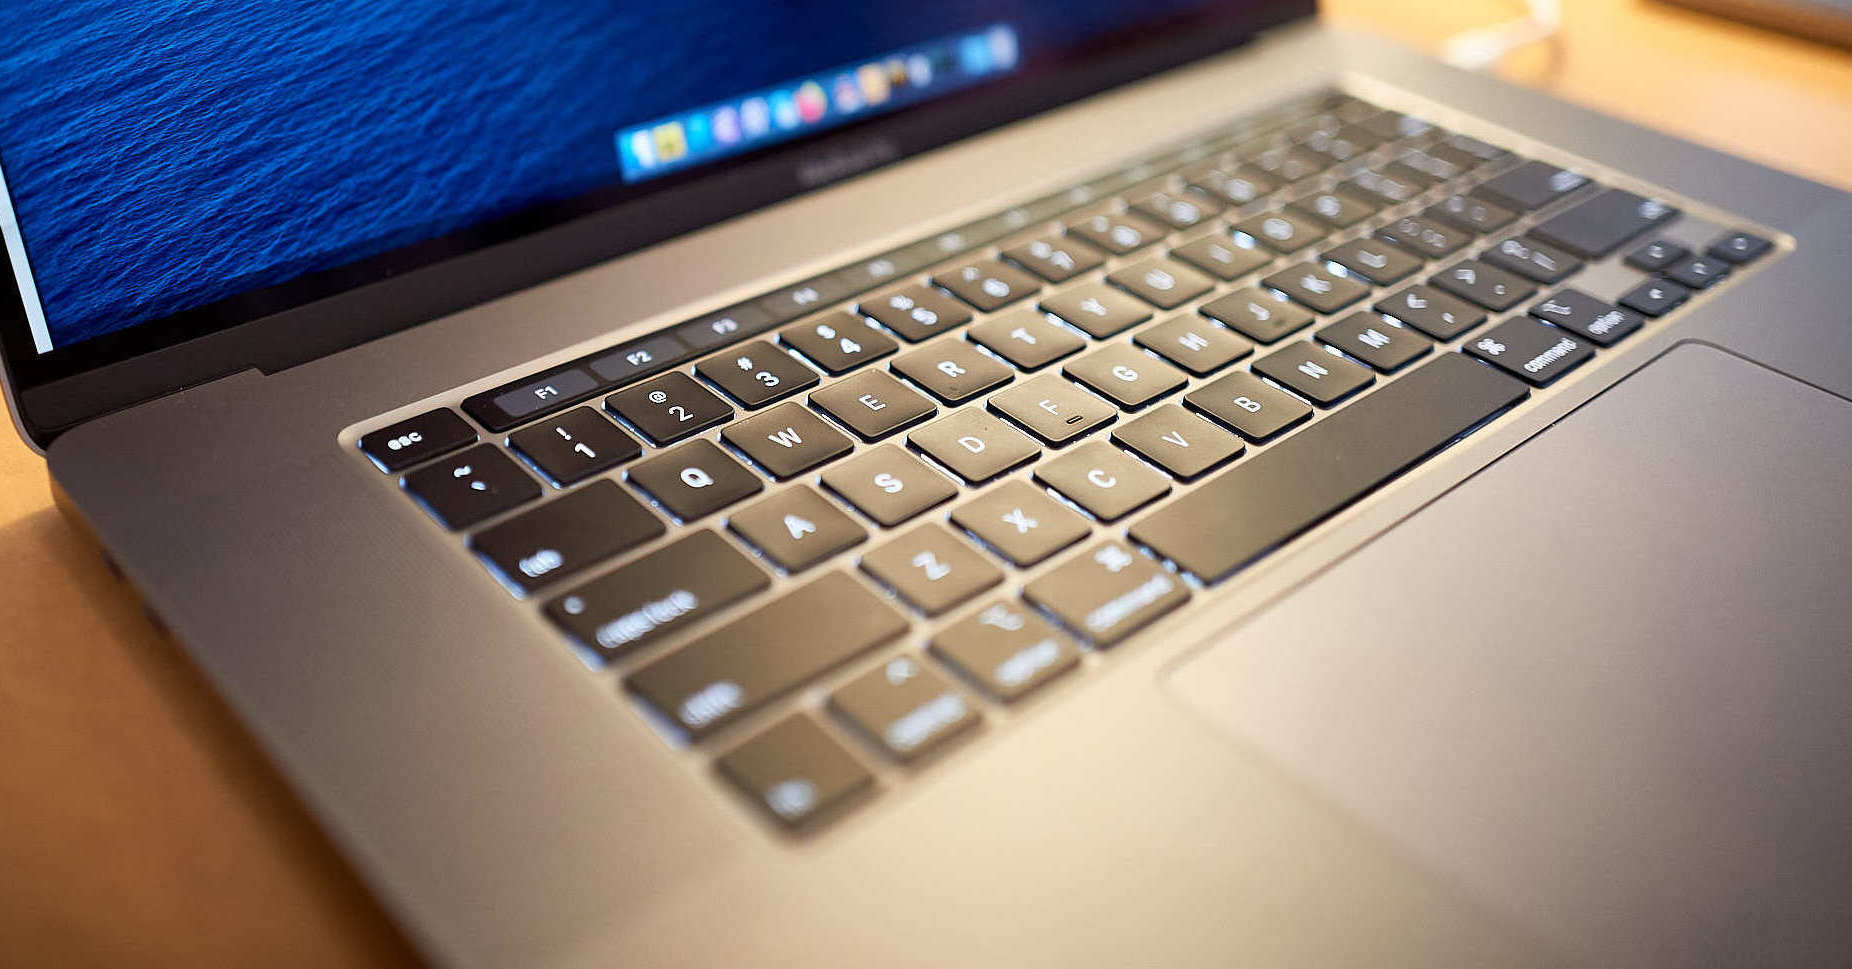 12-inch MacBook - Wikipedia